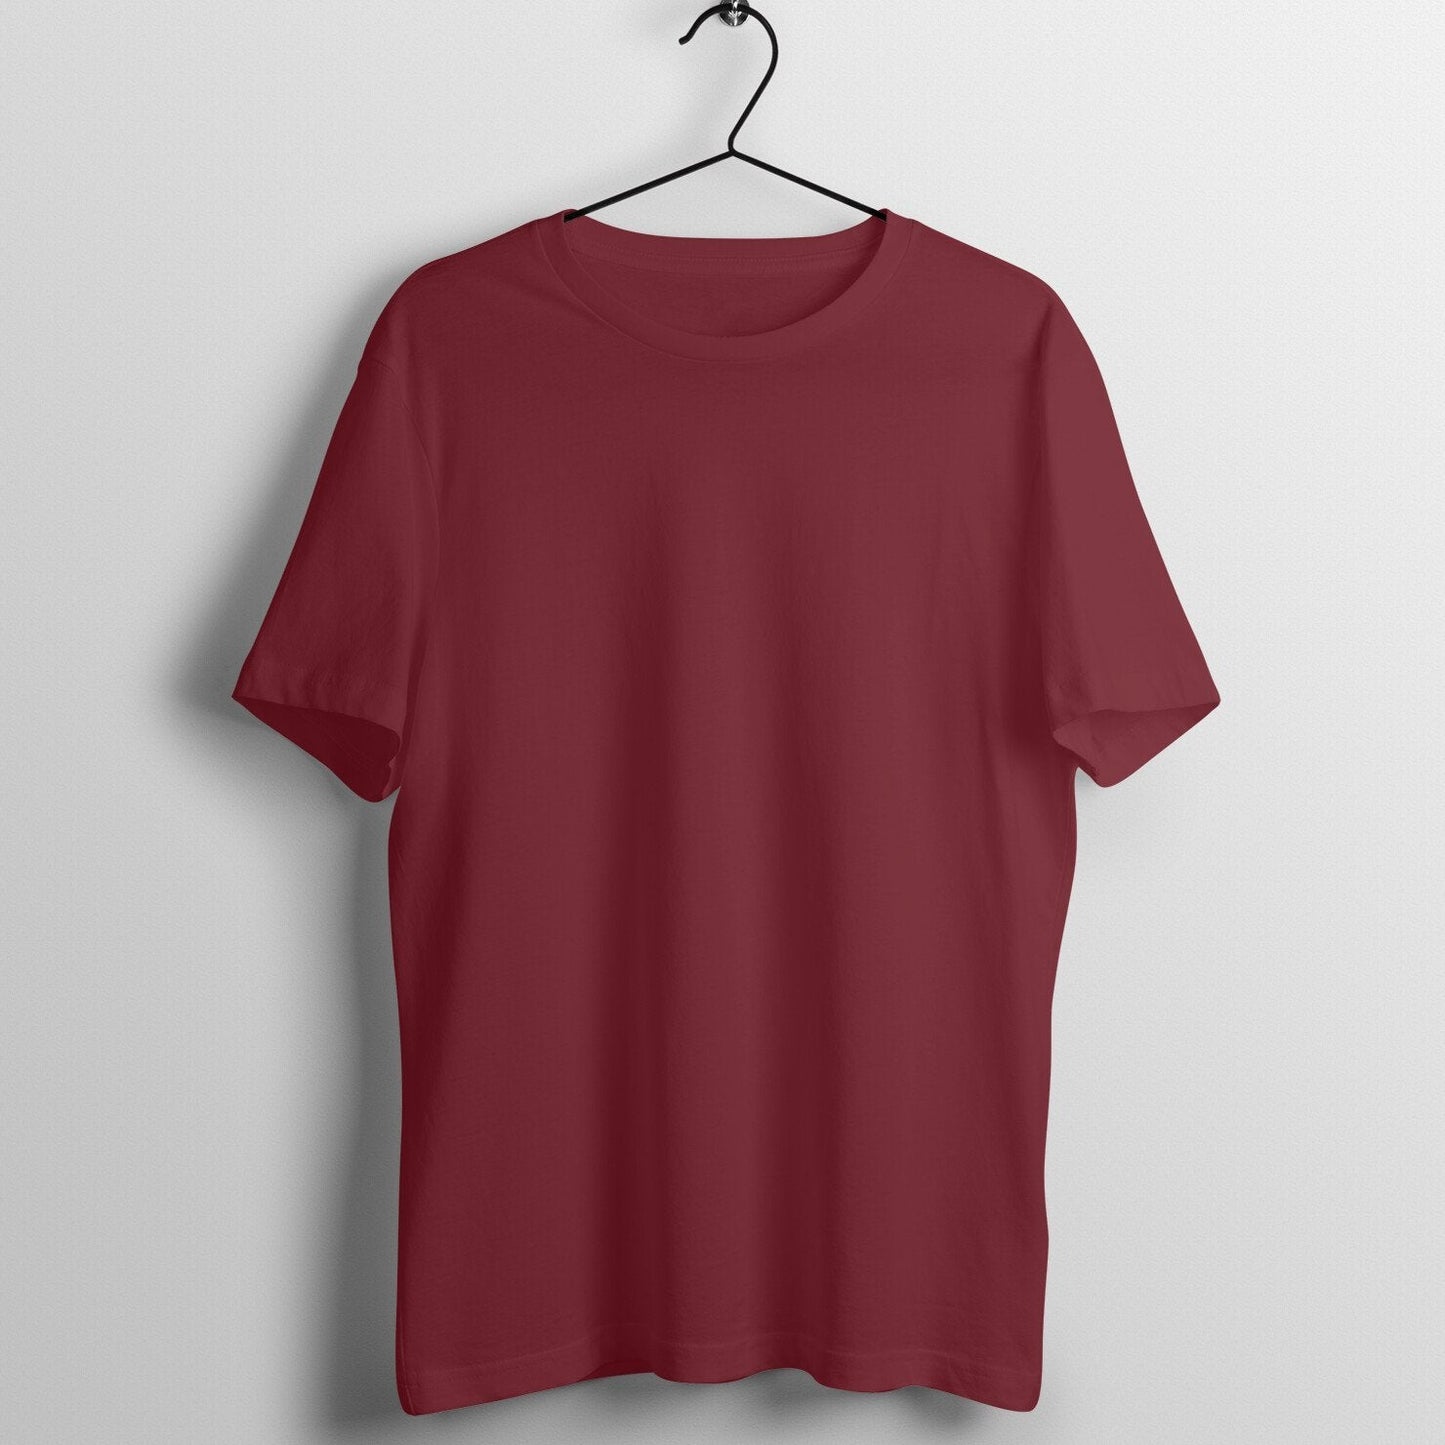 Maroon Half Sleeve T-Shirt - Insane Tees